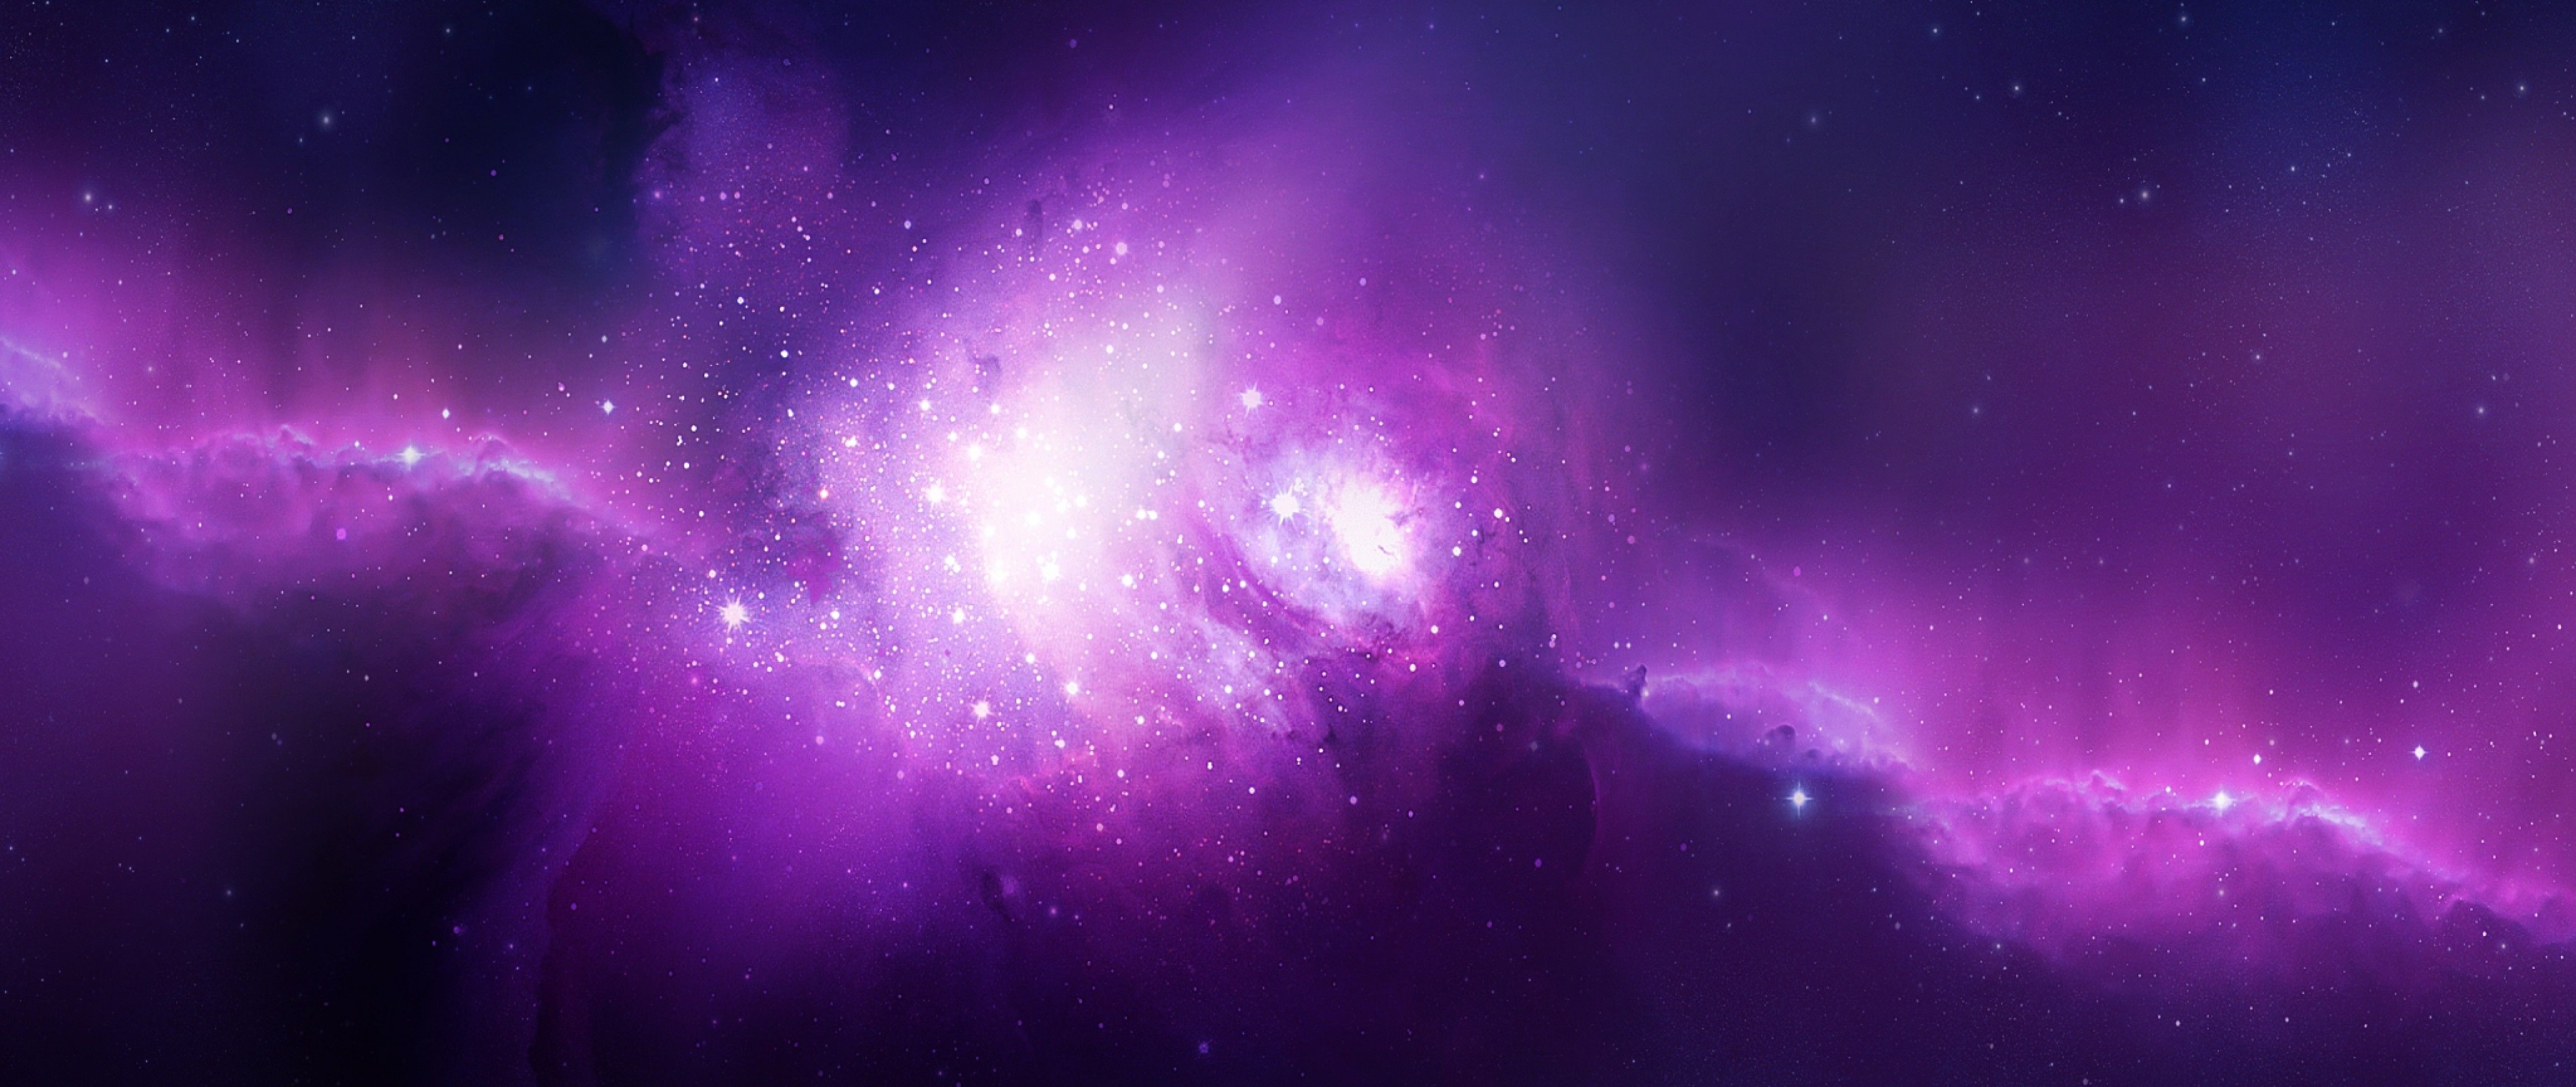 銀河ライブ壁紙hd,バイオレット,紫の,空,雰囲気,宇宙